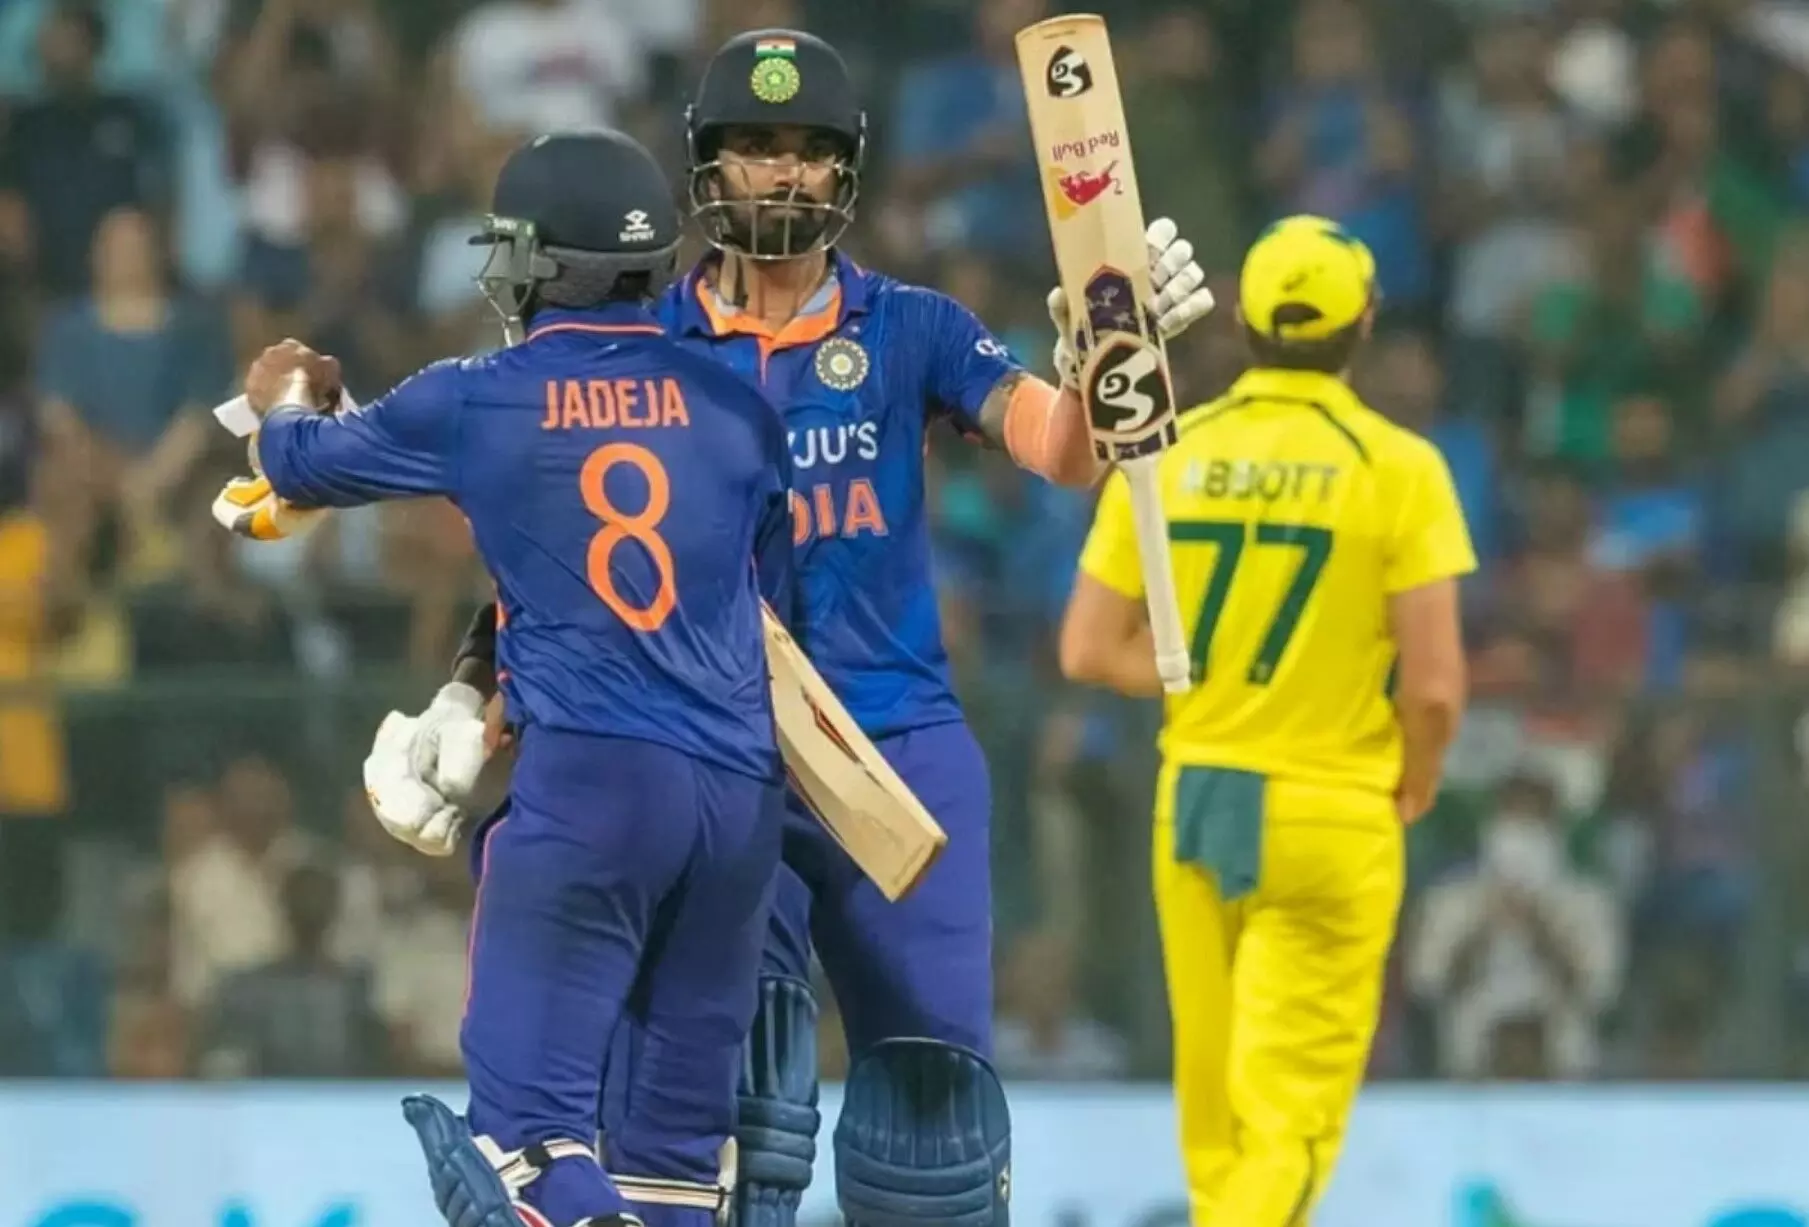 IND vs AUS: भारत की पारी 117 पर सिमटी, मिचेल स्टार्क ने झटके 5 विकेट, घरेलू मैदान पर ऑस्ट्रेलिया के खिलाफ सबसे कम स्कोर